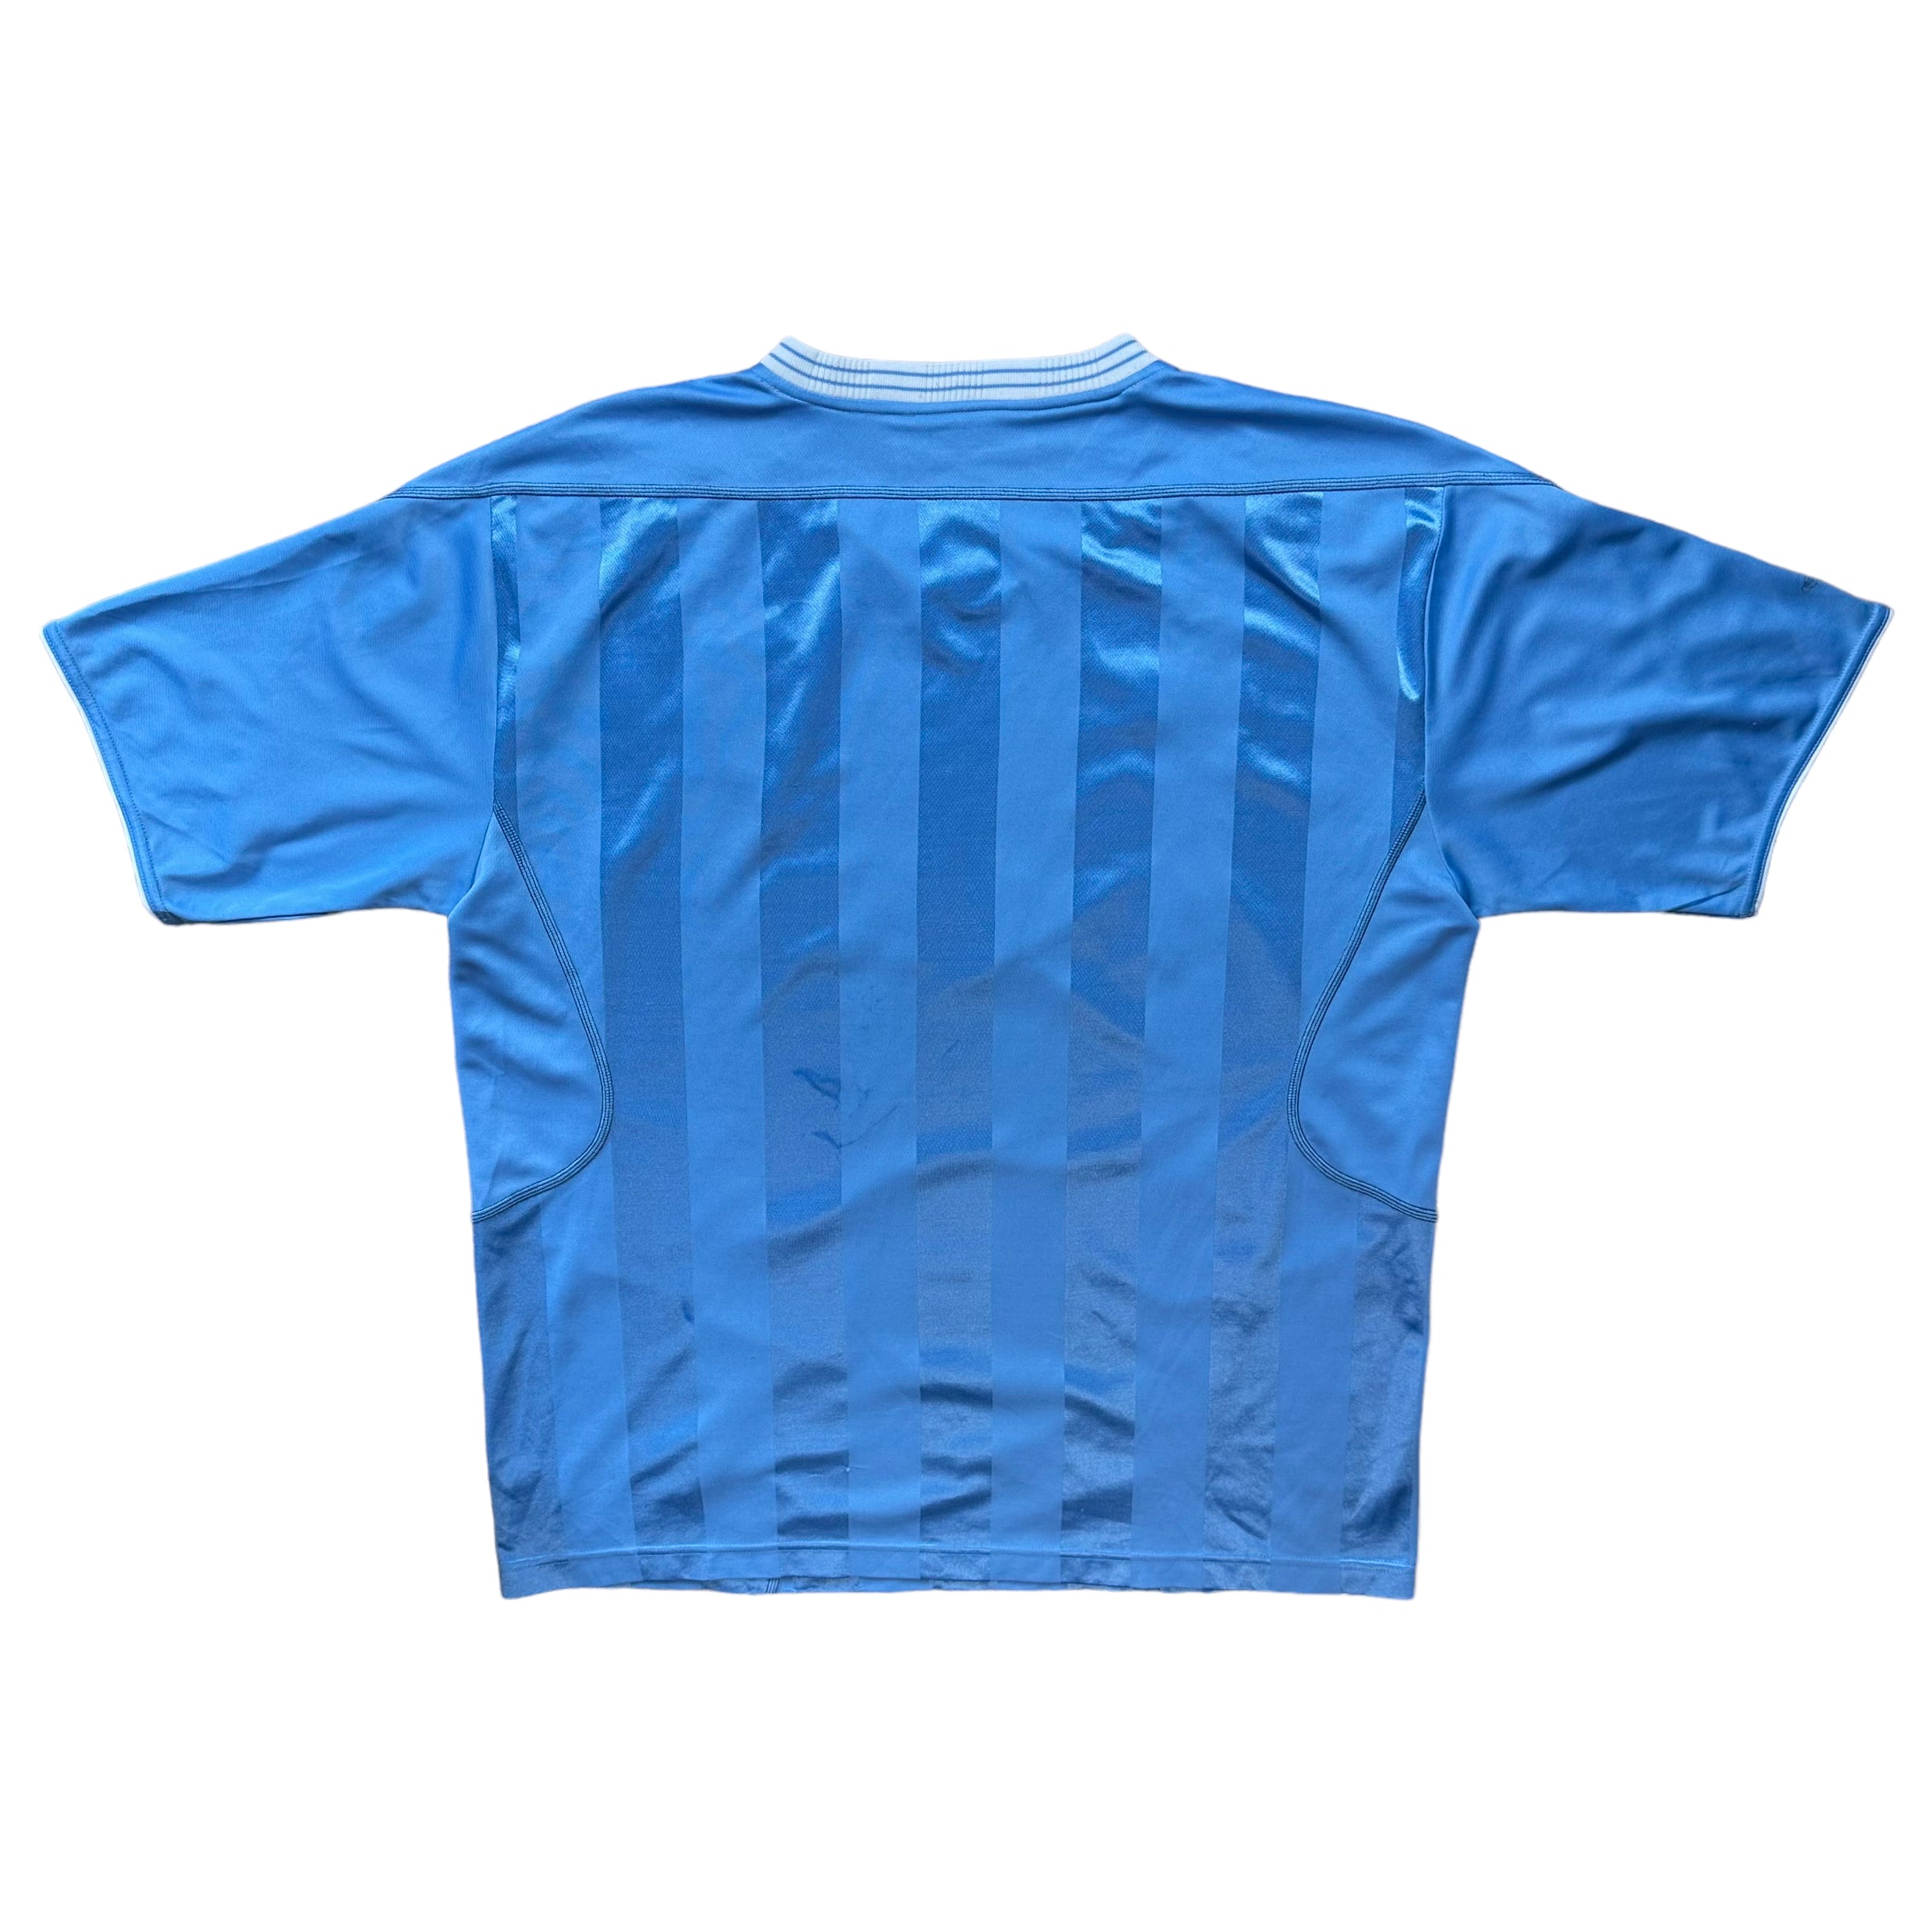 Manchester City 2003-04 Home Shirt (XL)